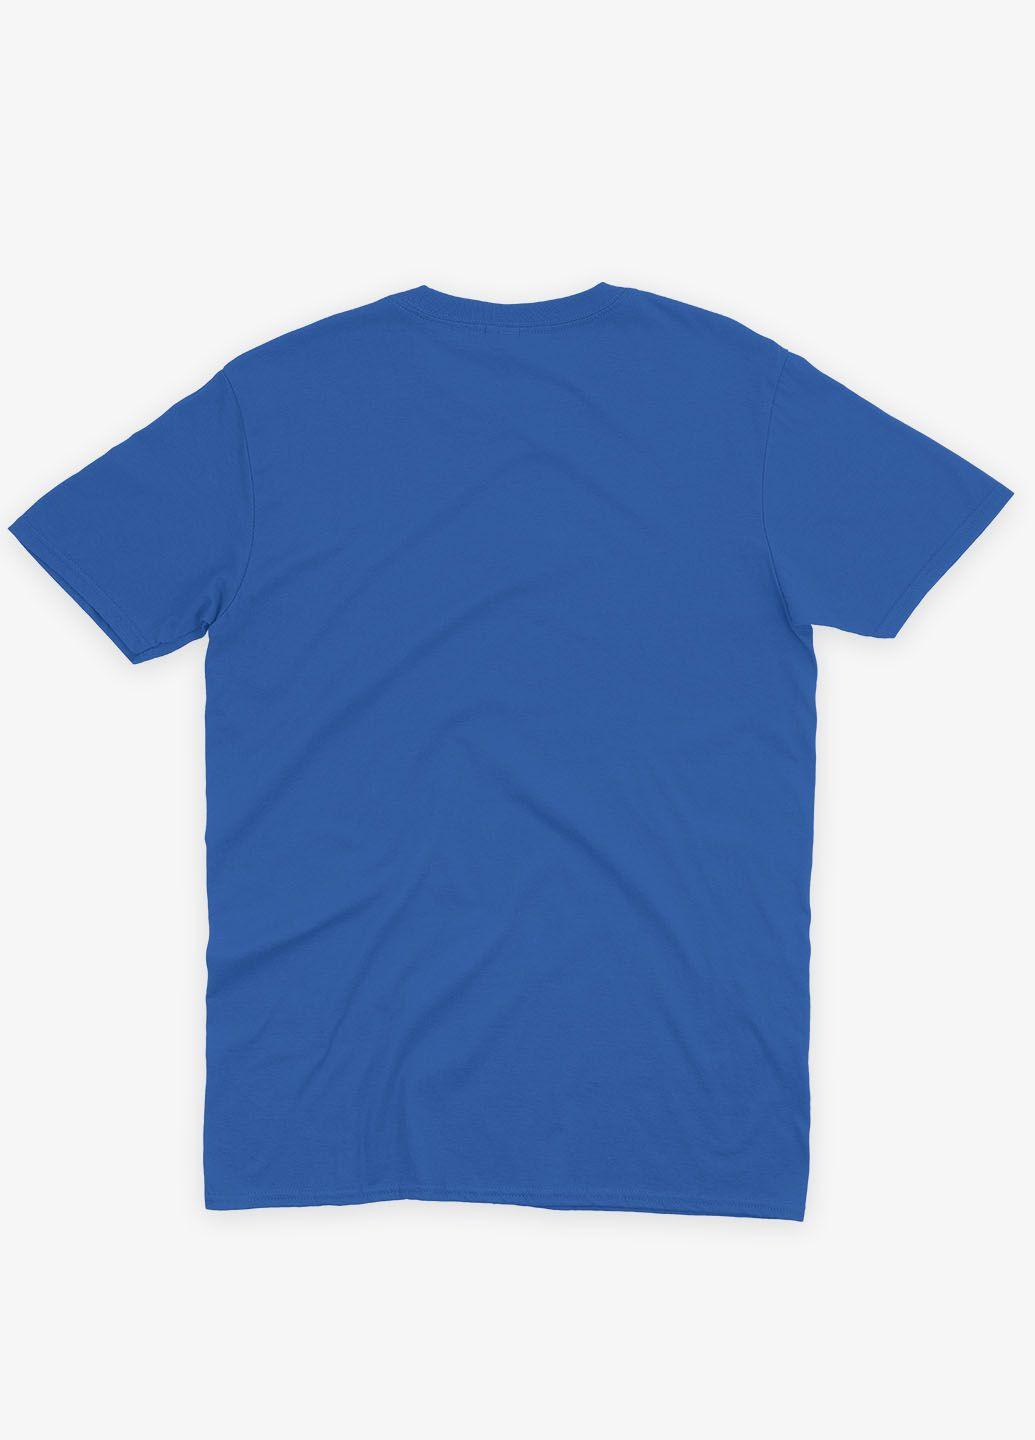 Синяя демисезонная футболка для мальчика с принтом супергероя - чудо-женщина (ts001-1-brr-006-006-006-b) Modno